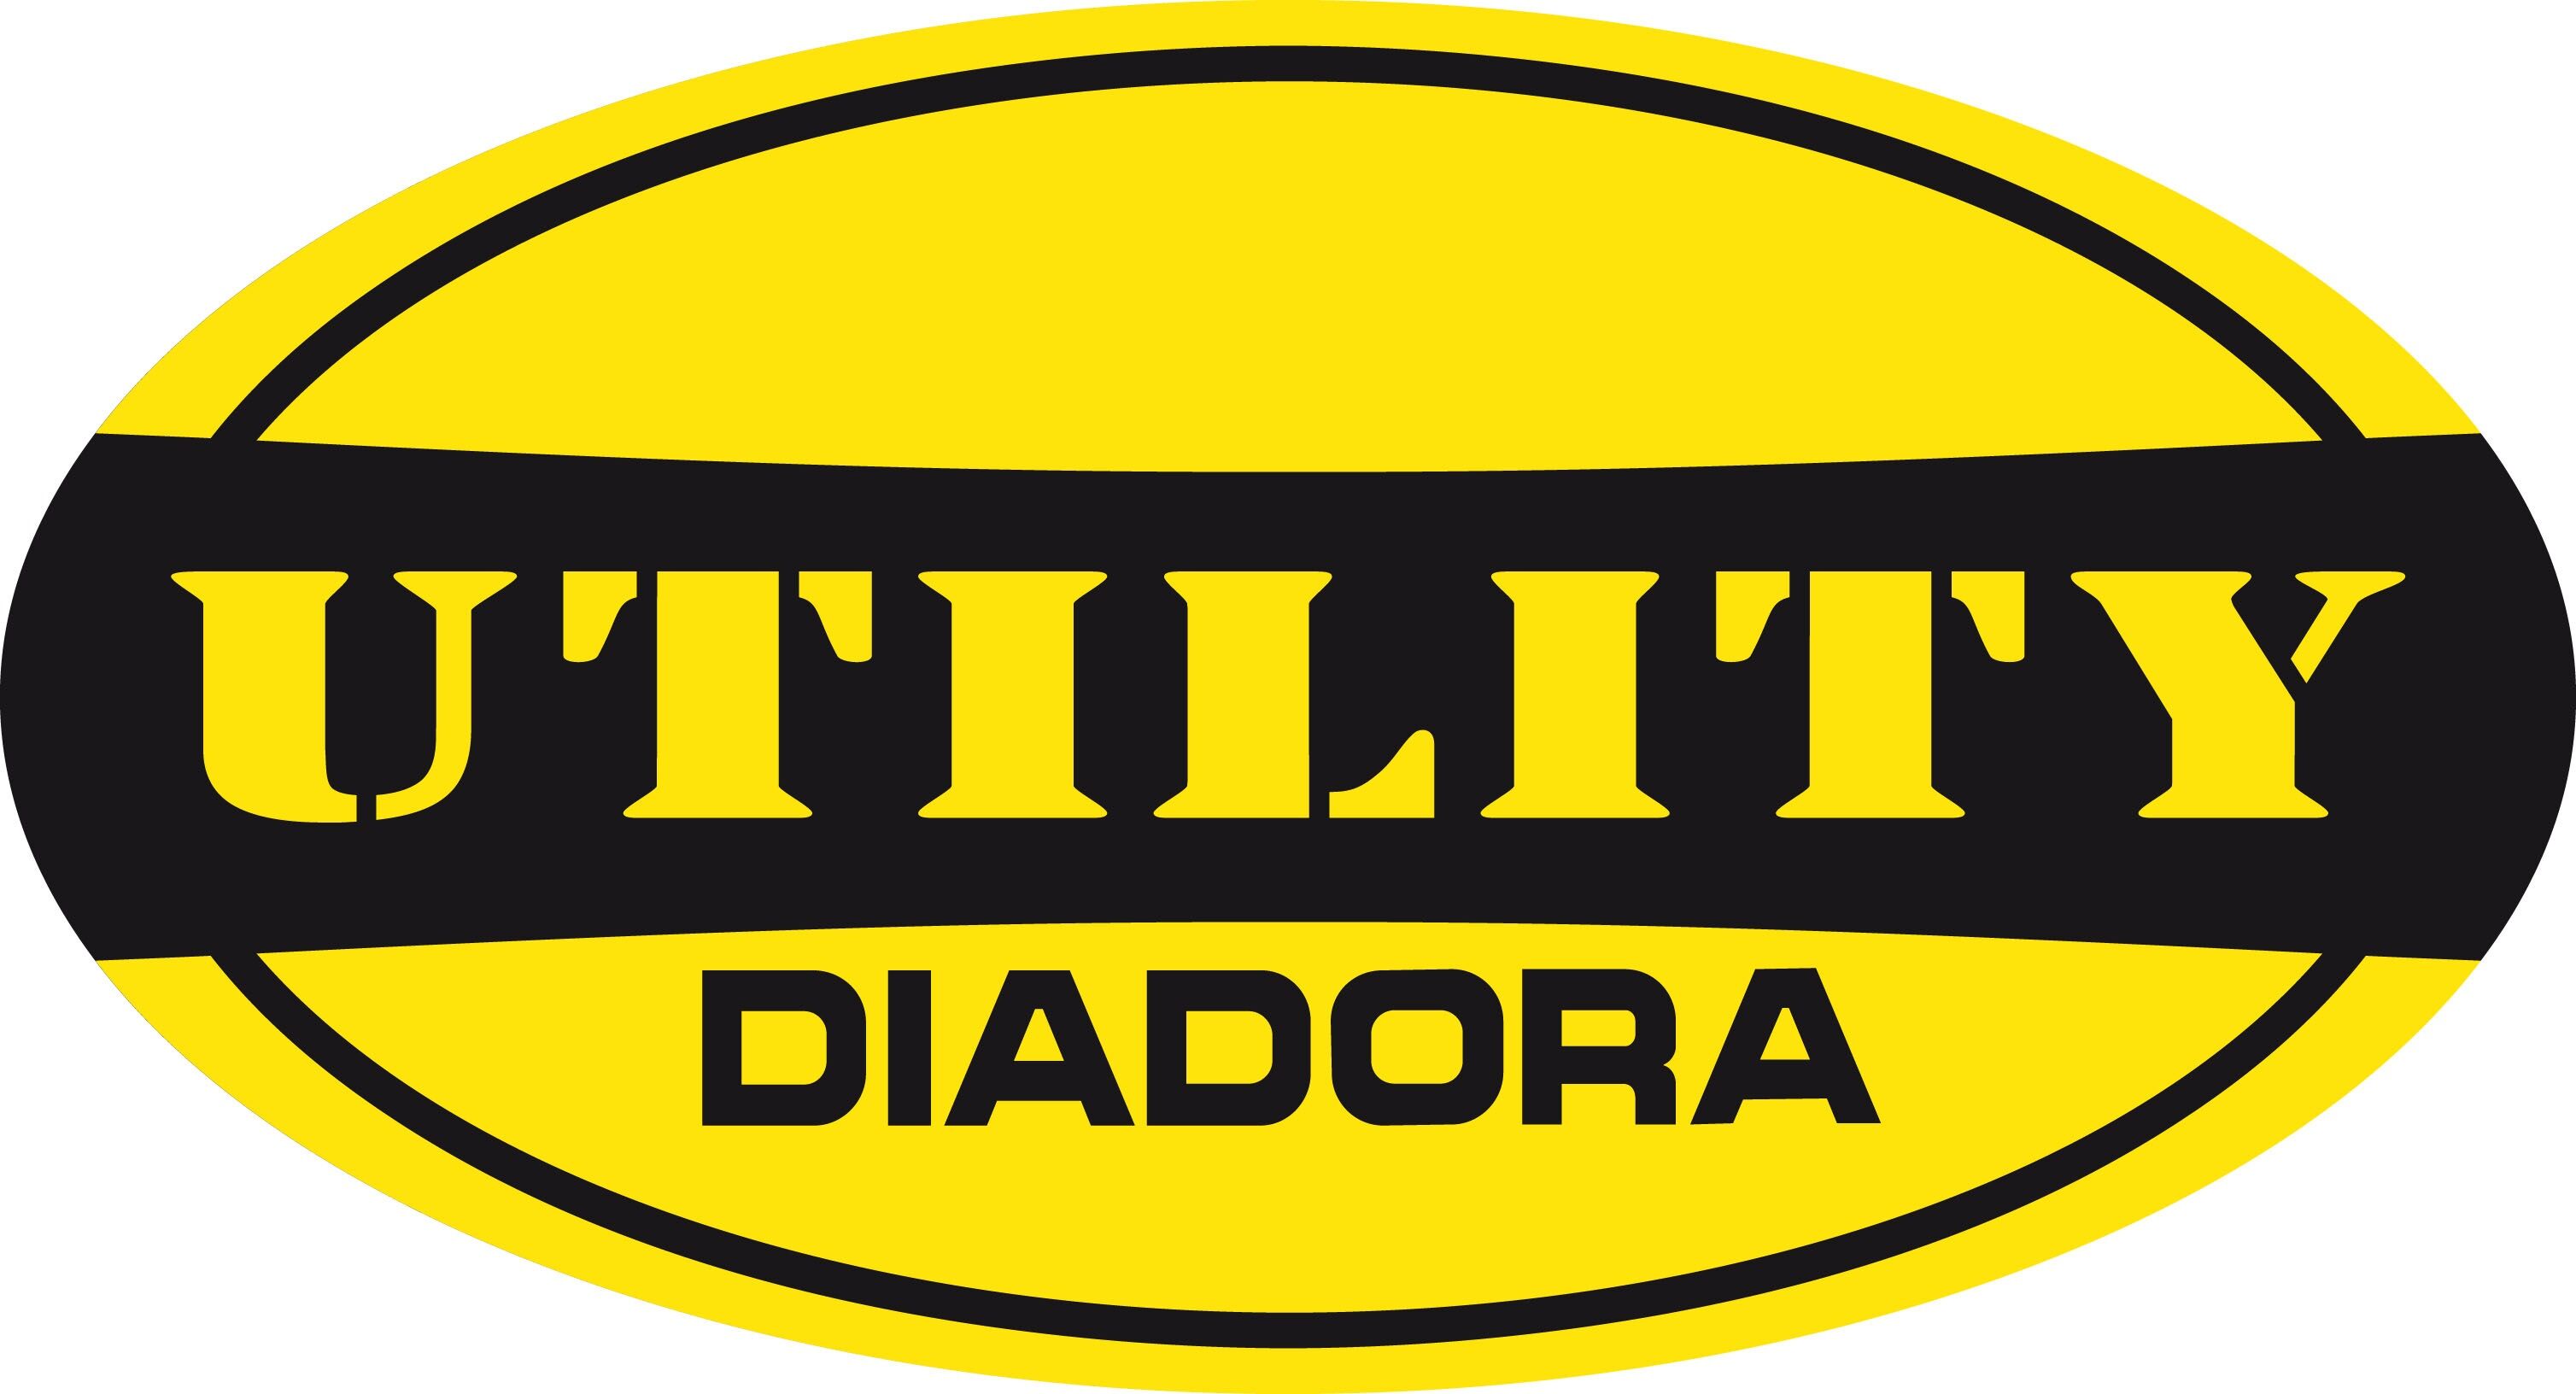 DIADORA UTILITY logo